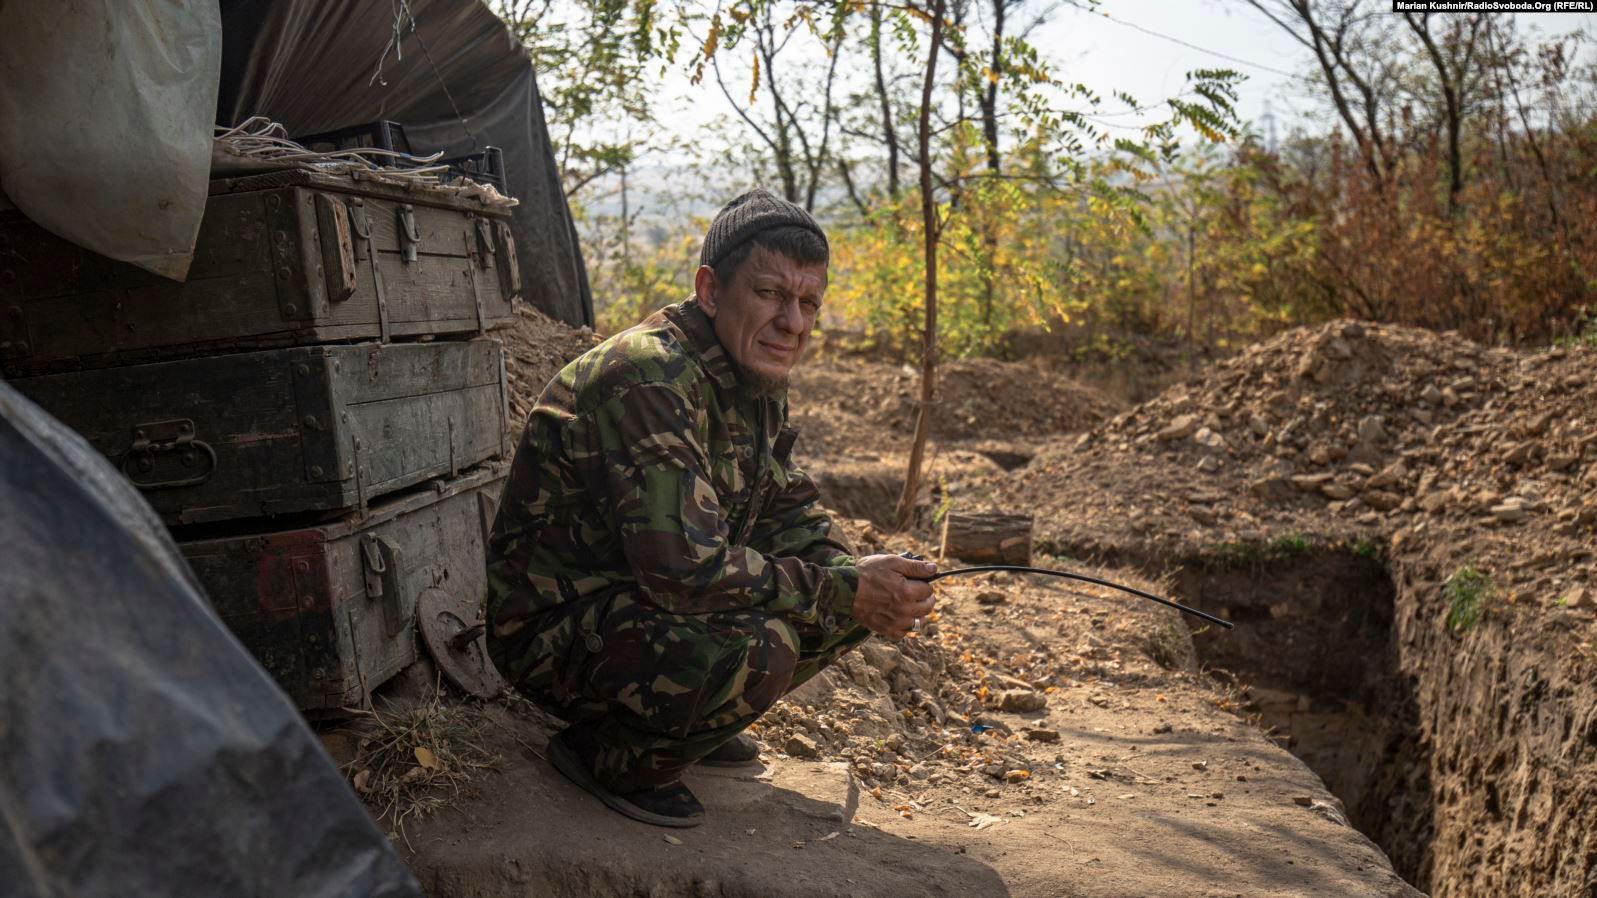 Як священник пішов на фронт захищати Україну – розповідь морського піхотинця - фото 62925